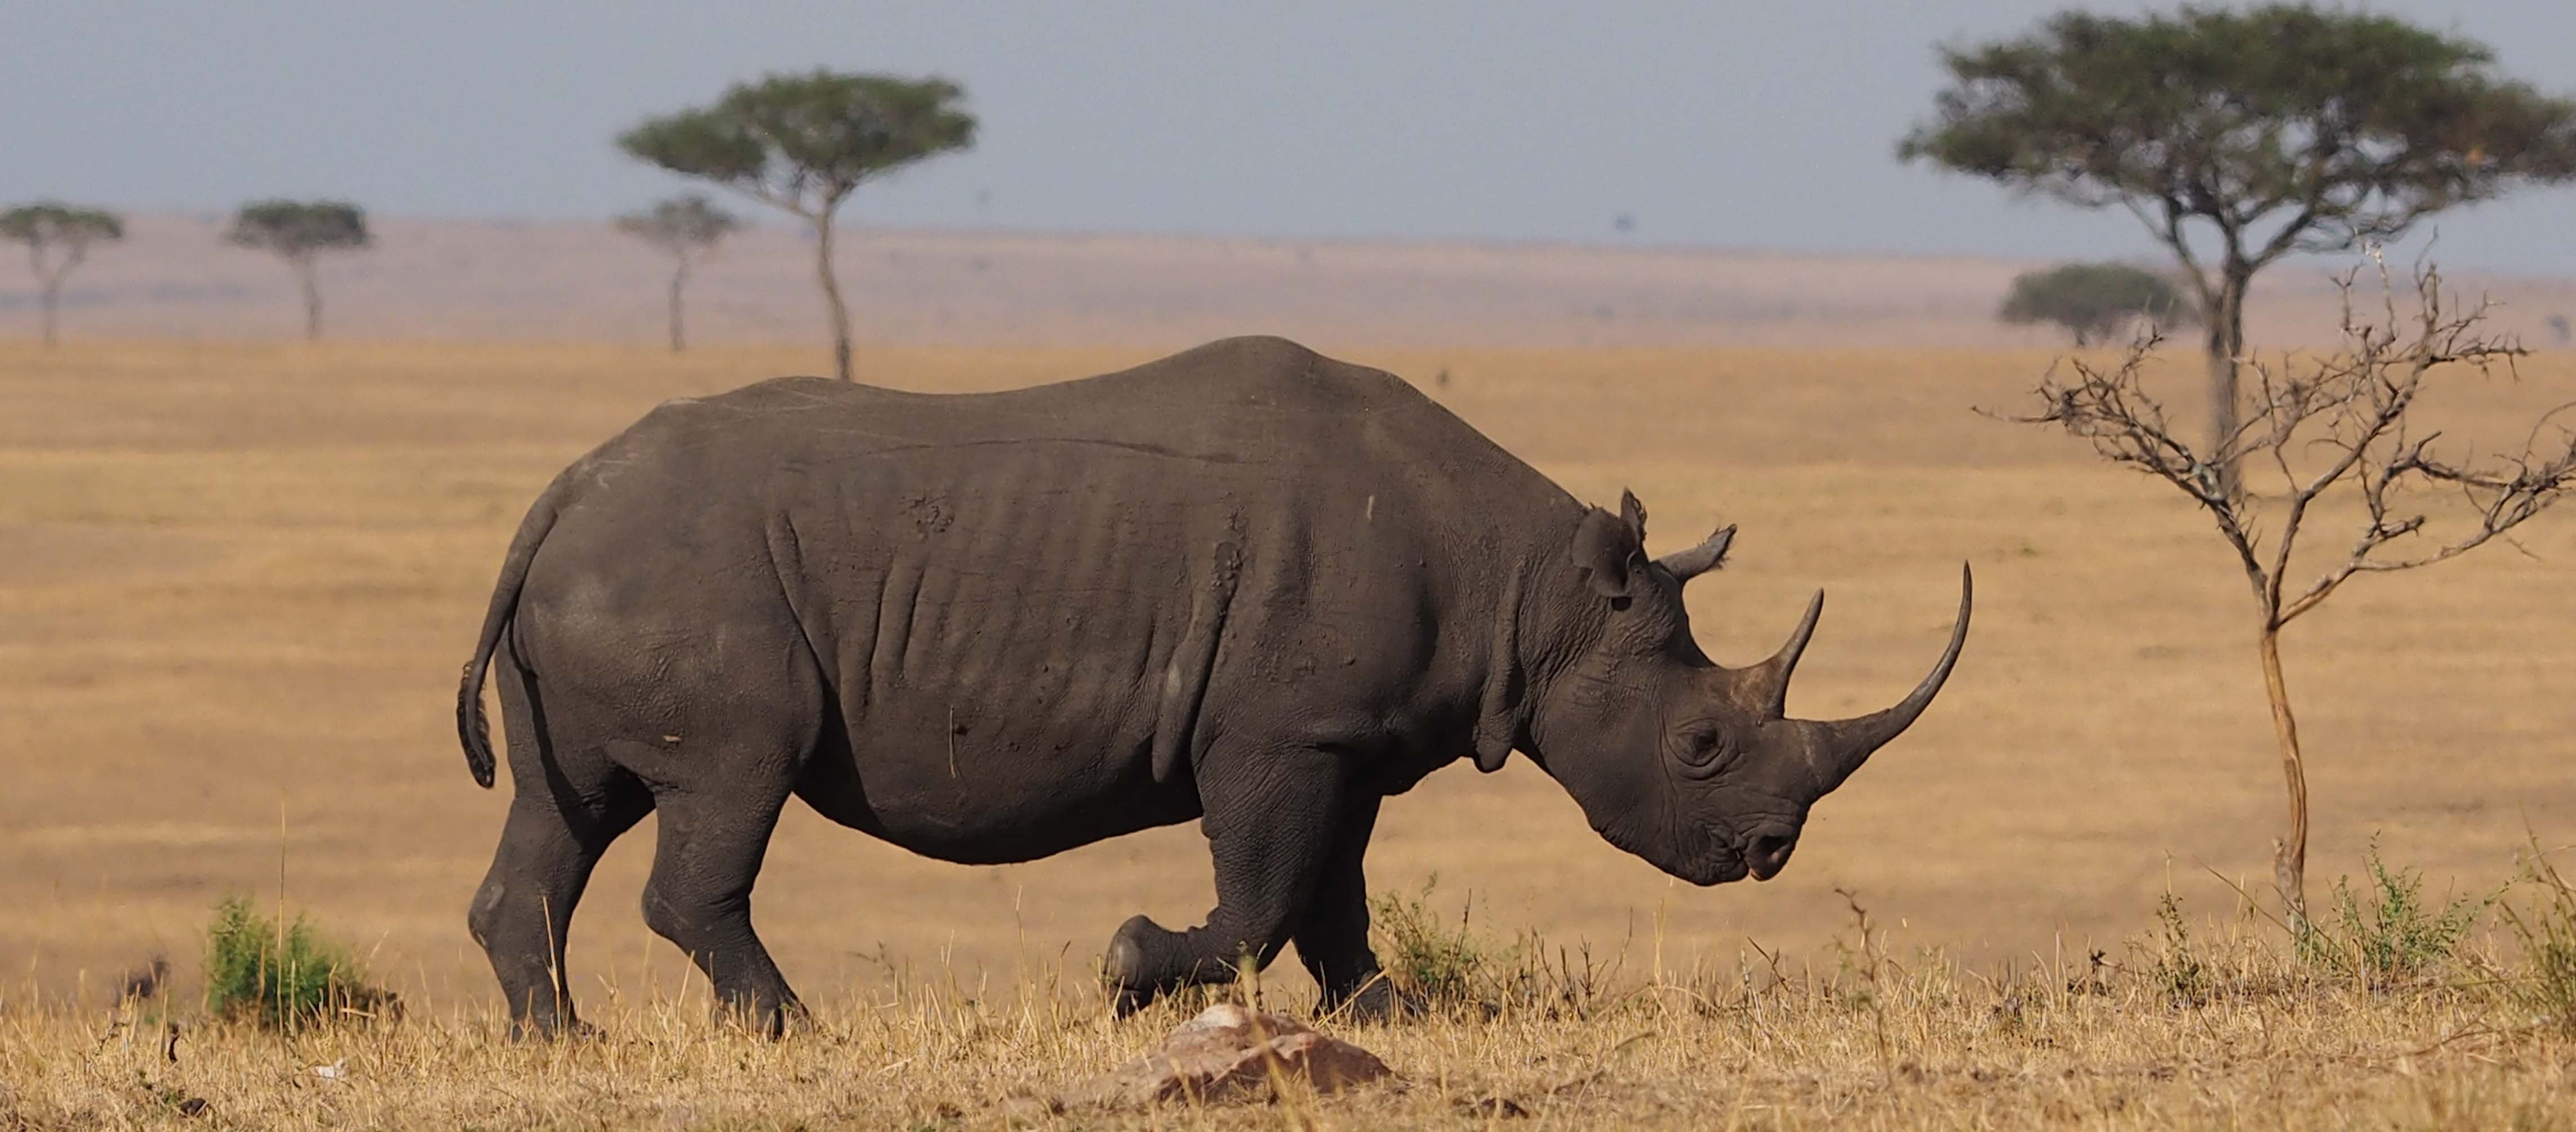 Rhino in Serengeti, Monarch Safaris. Rhino is one of the big five safari animals